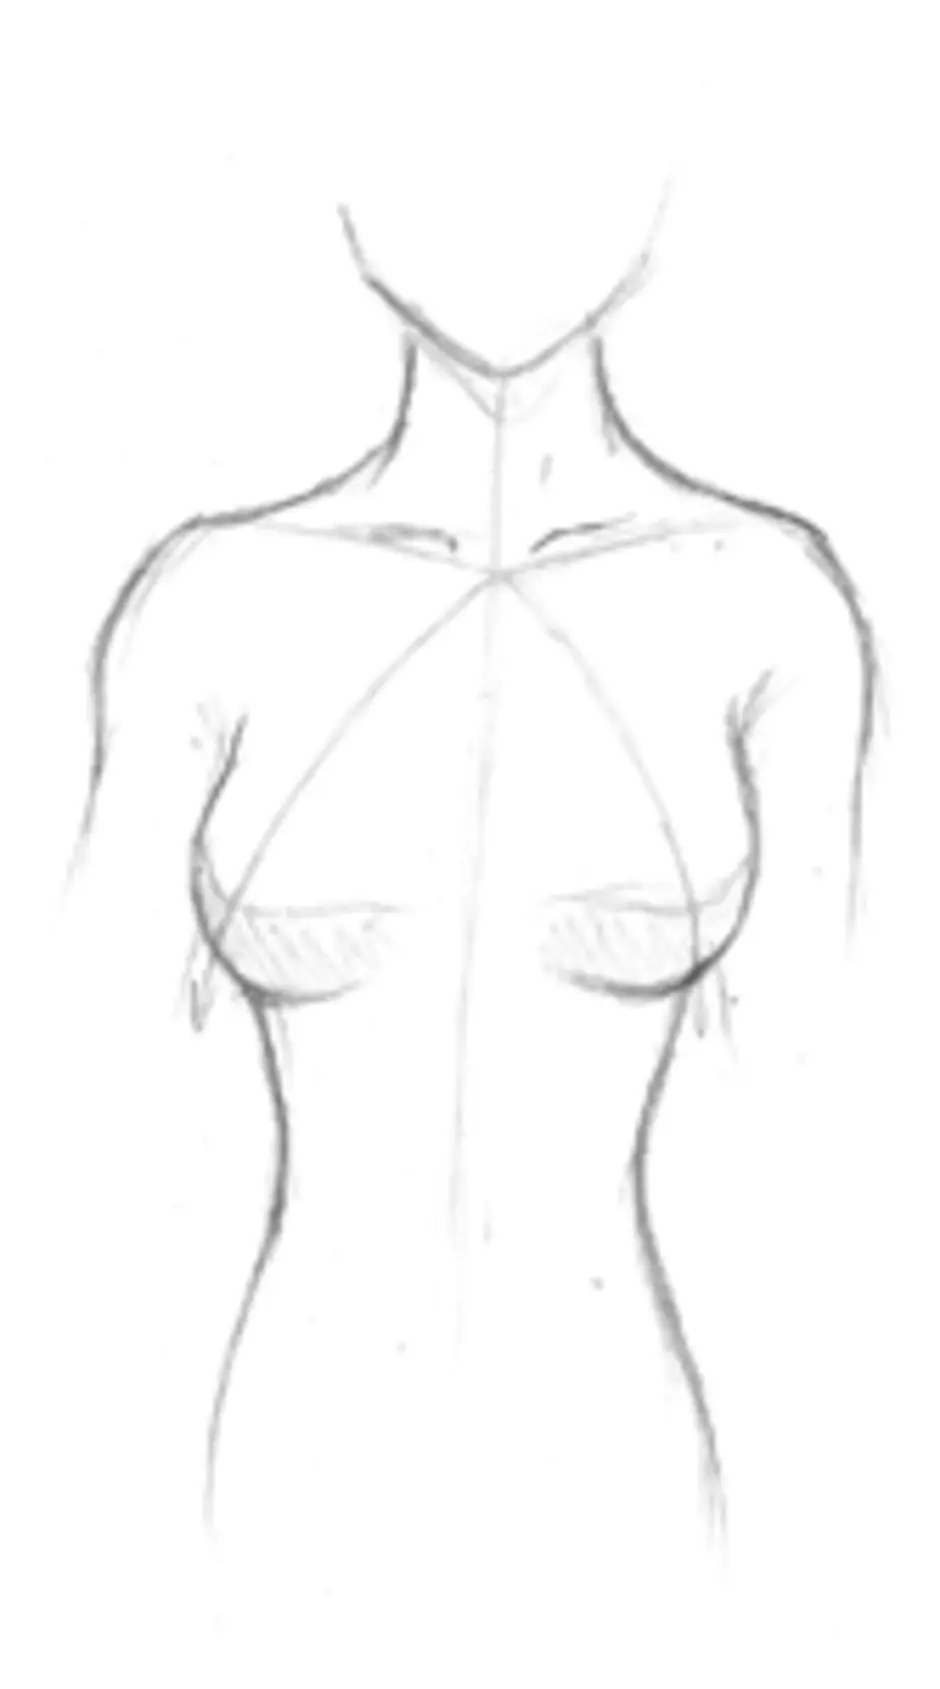 как нарисовать грудь как у аниме фото 62